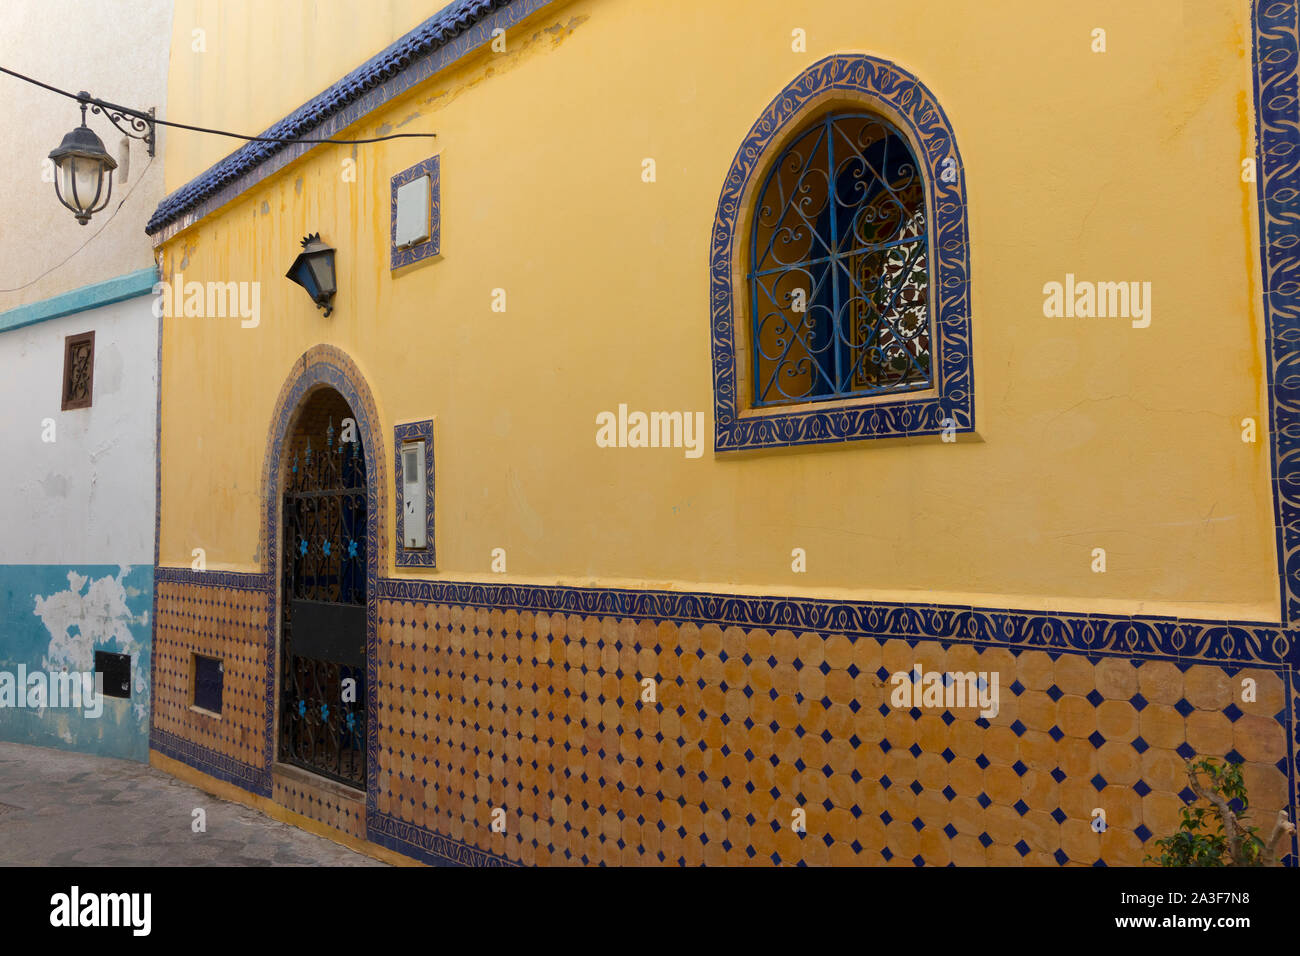 Façade d'une maison traditionnelle décorée de carreaux dans la médina d'Assilah, Maroc Banque D'Images